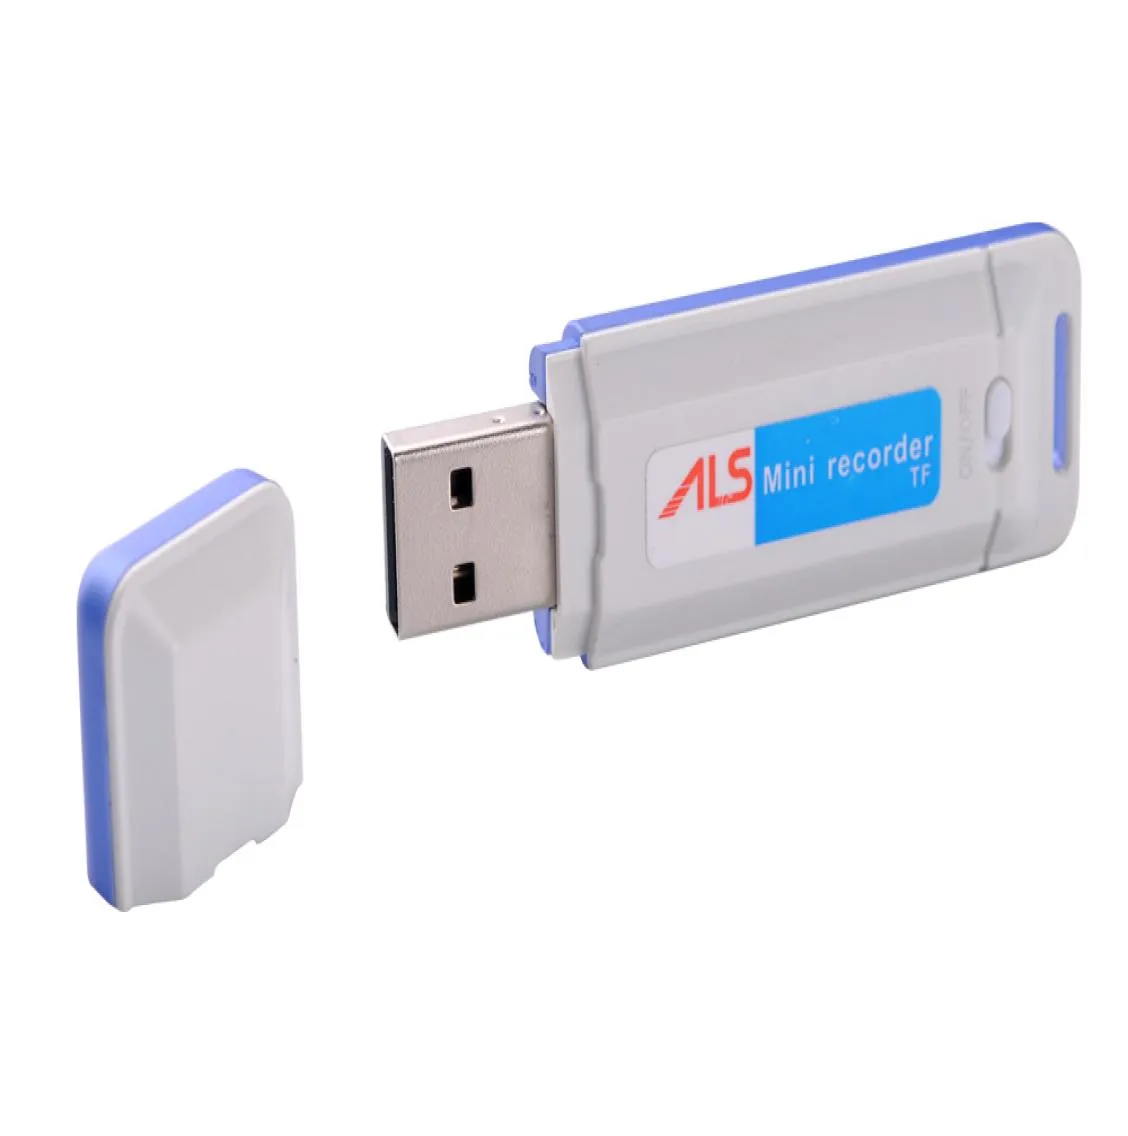 USB Disk Mini Audio Voice Recorder K1 USB Flash Drive Pen دعم ما يصل إلى 32 جيجابايت أسود أبيض في حزمة التجزئة DropshipPI3404045